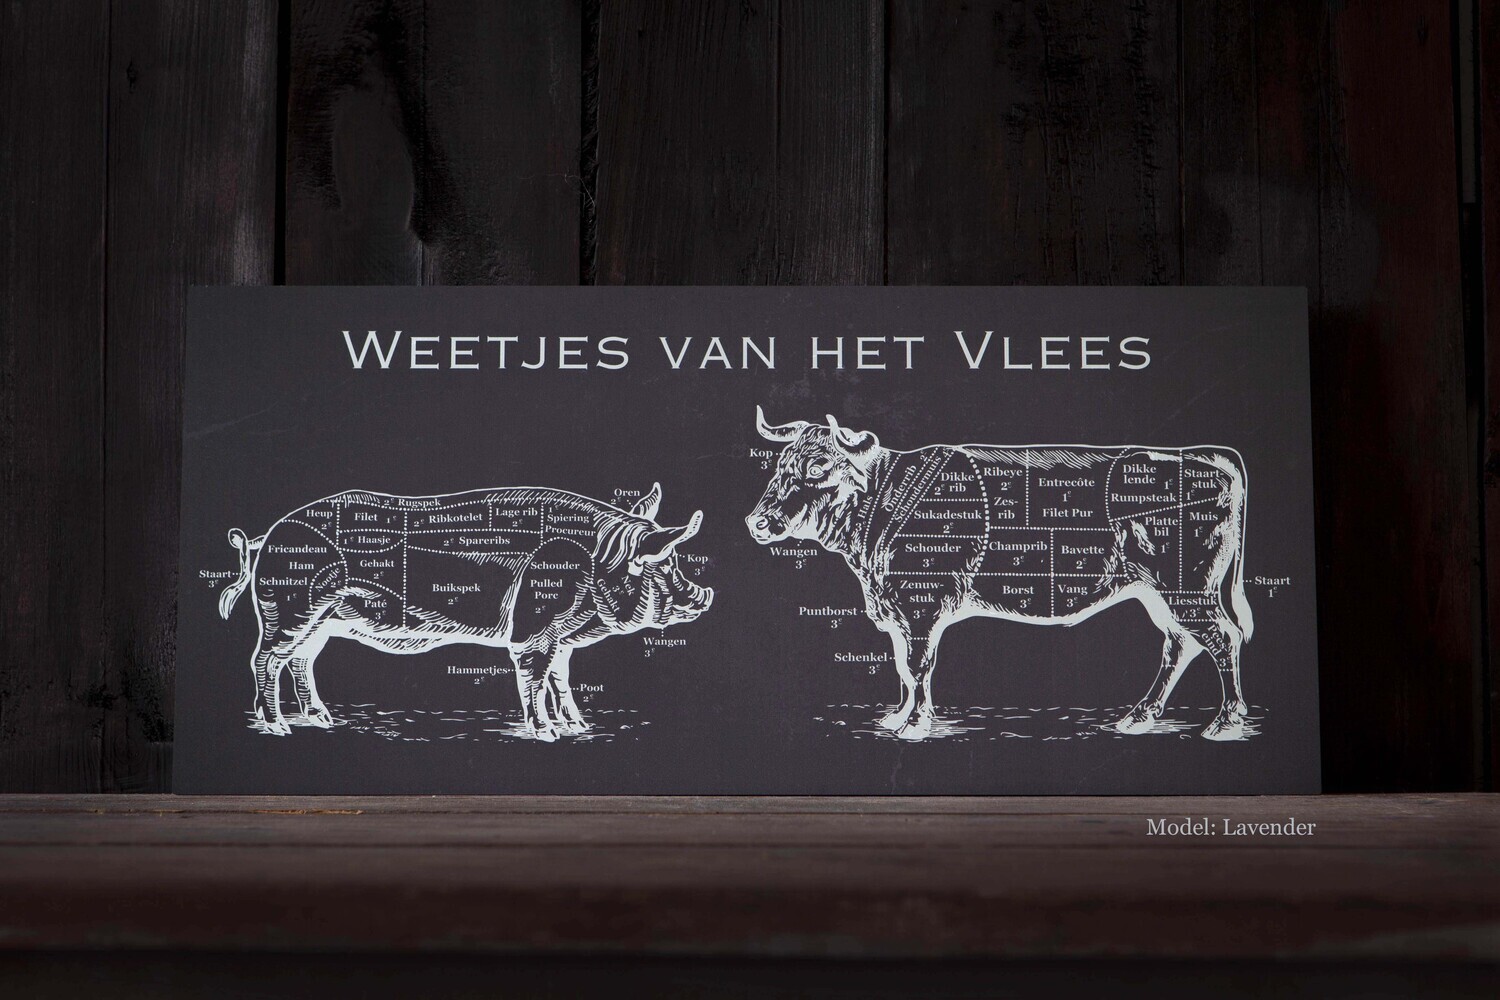 Weetjes van het Vlees Lavender 'Vlaamse versie'